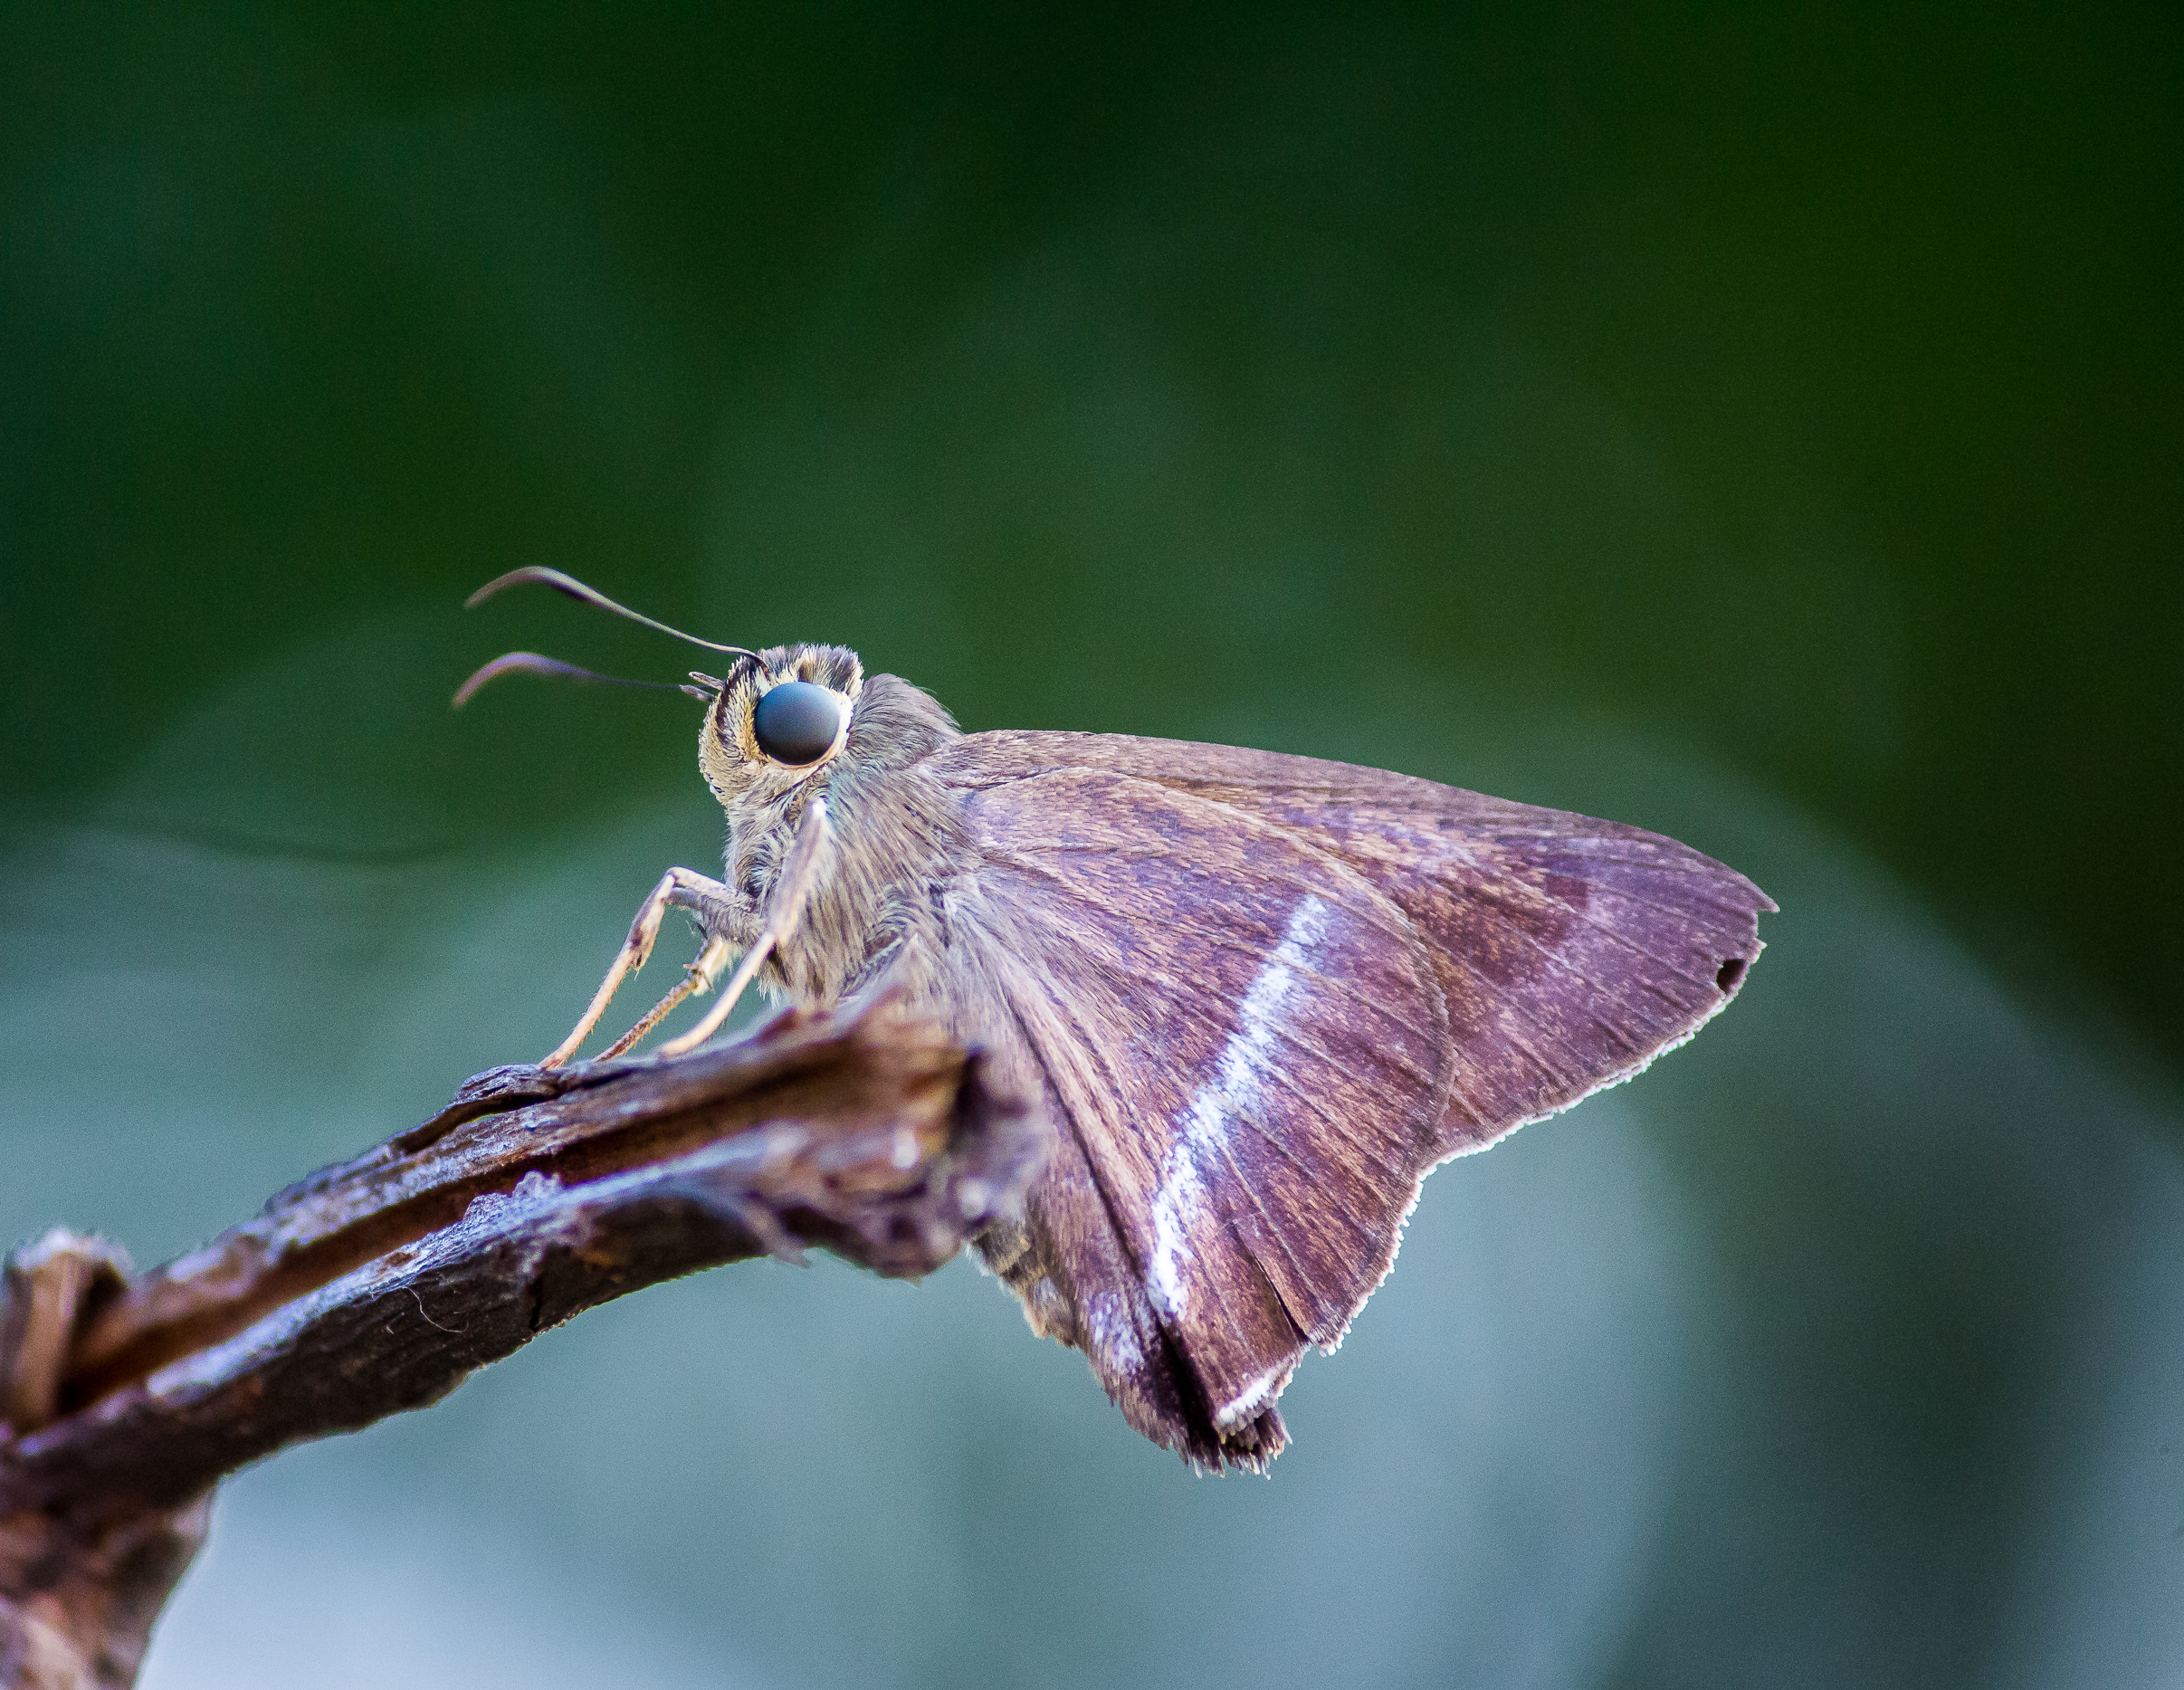 A moth on a twig